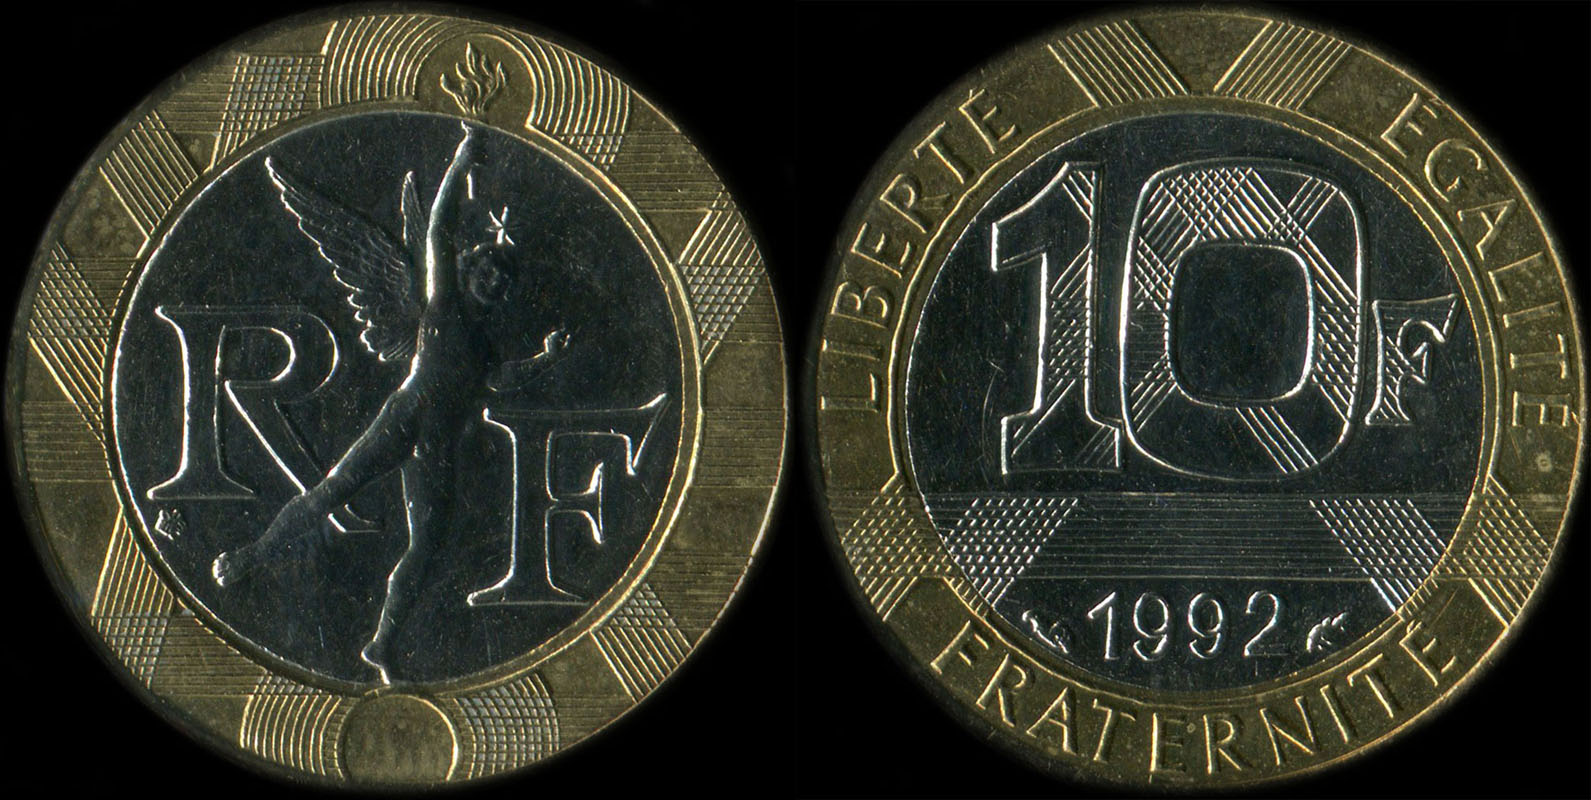 Pice de 10 francs Gnie 1992